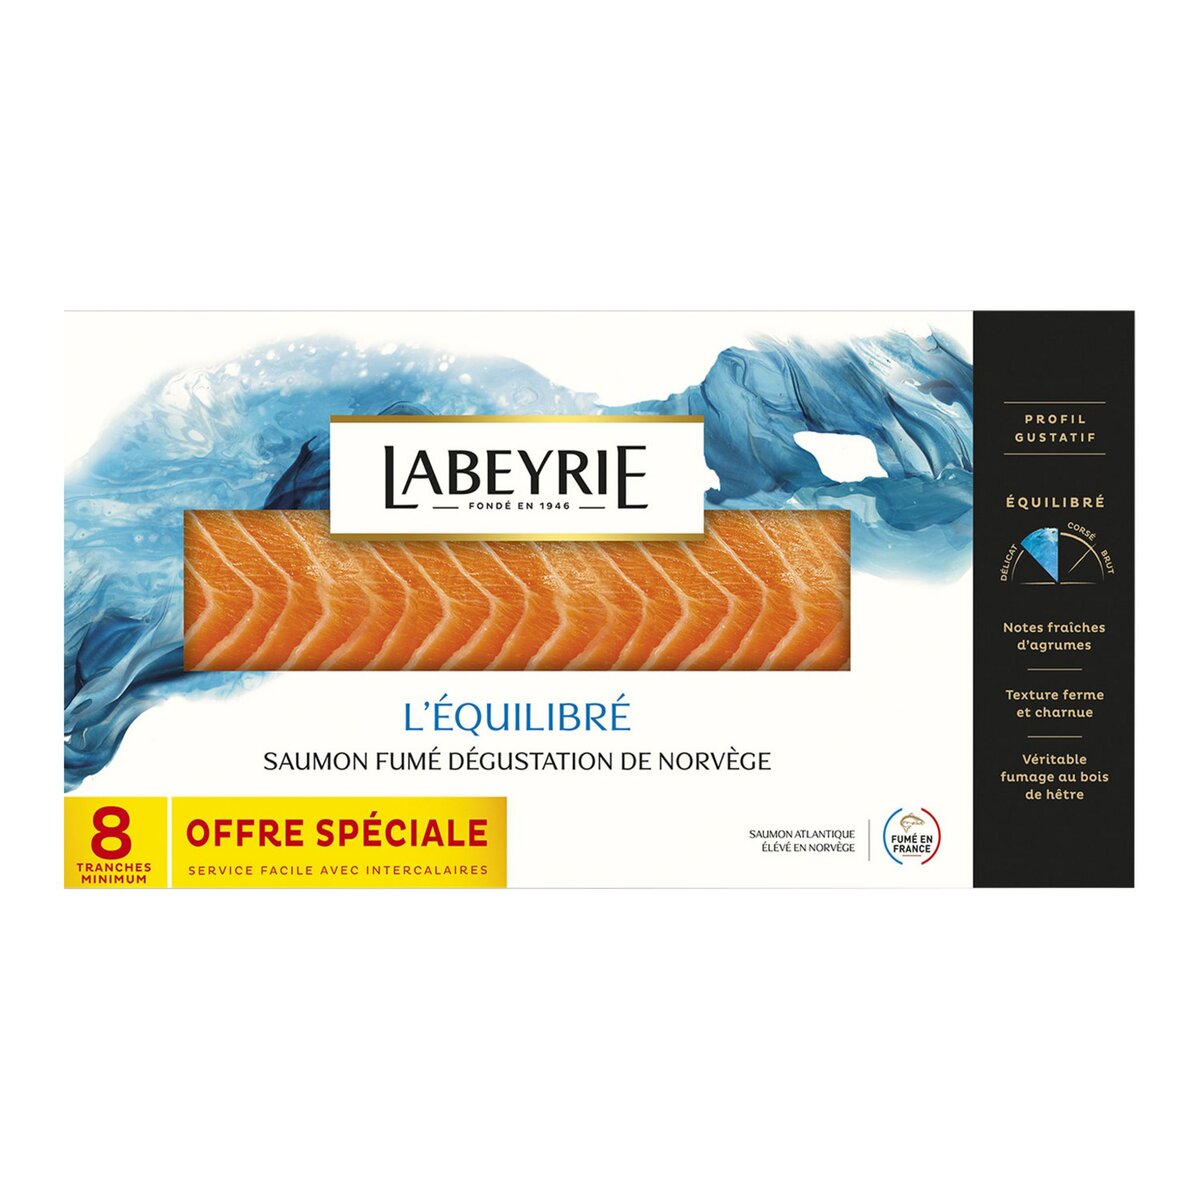 LABEYRIE Labeyrie Saumon fumé de Norvège dégustation tranché x8 290g 8 tranches minimum 290g